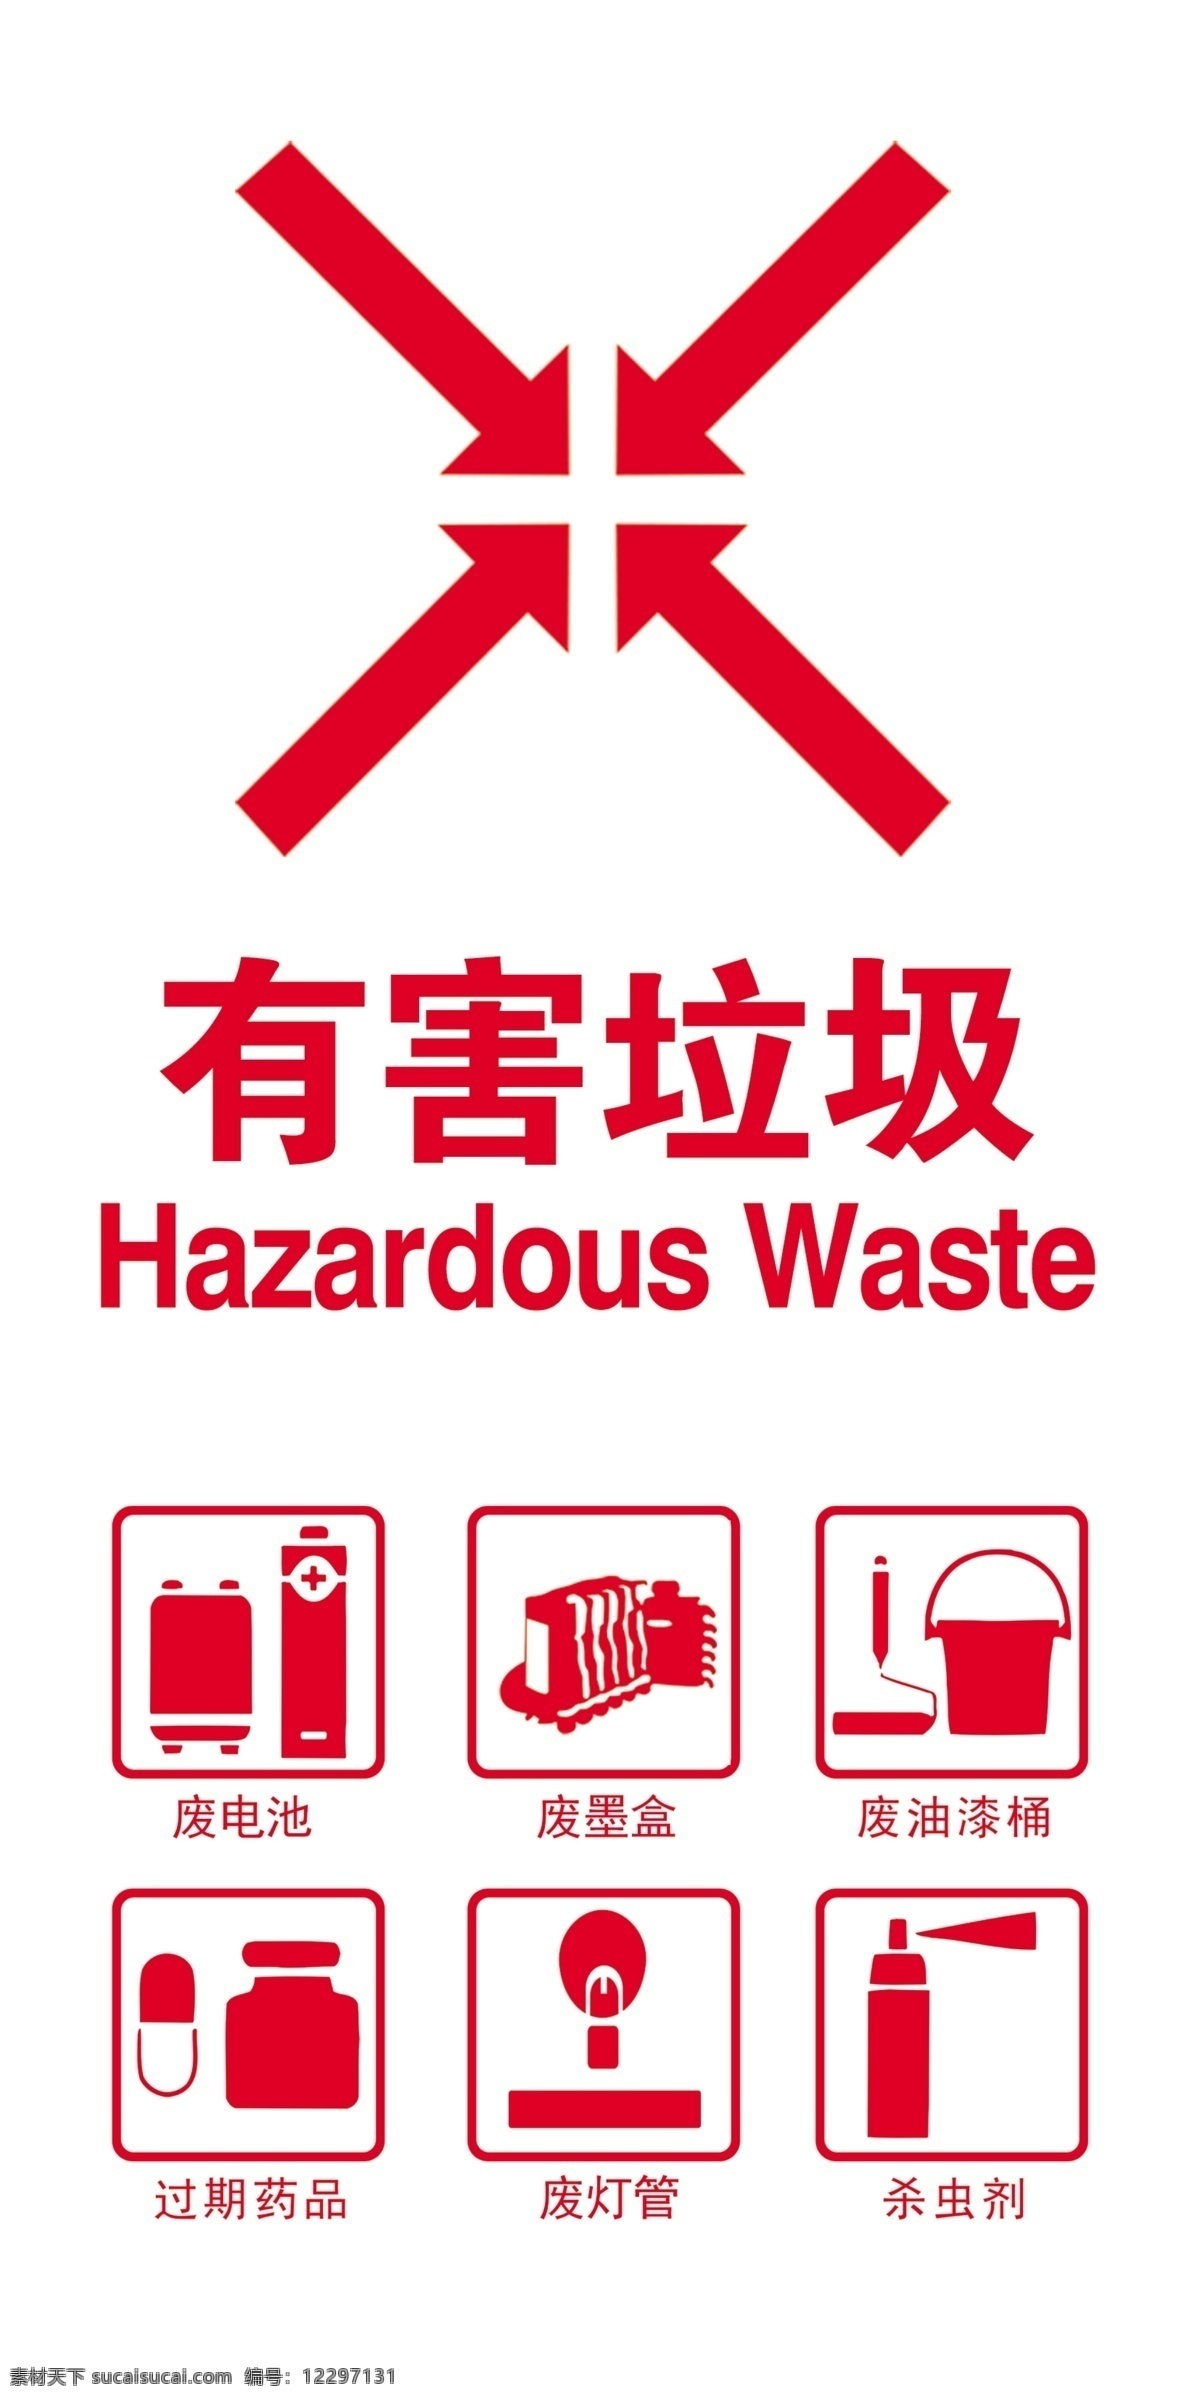 垃圾分类 有害垃圾图片 垃圾分类海报 垃圾分类图片 垃圾分类宣传 生活垃圾分类 垃圾分类知识 垃圾分类标准